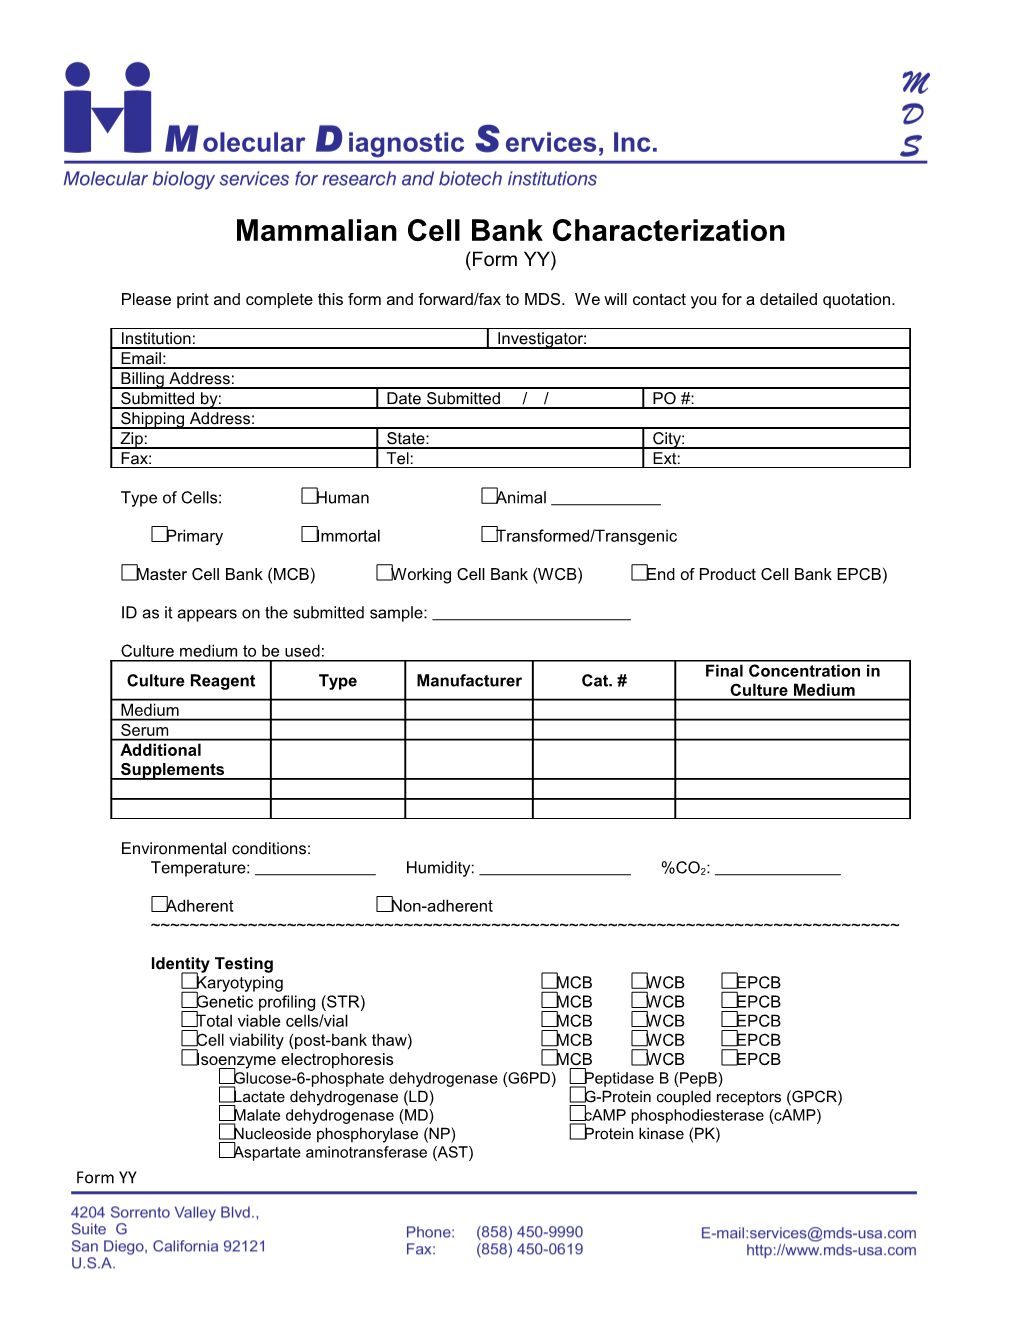 Mammalian Cell Bank Characterization